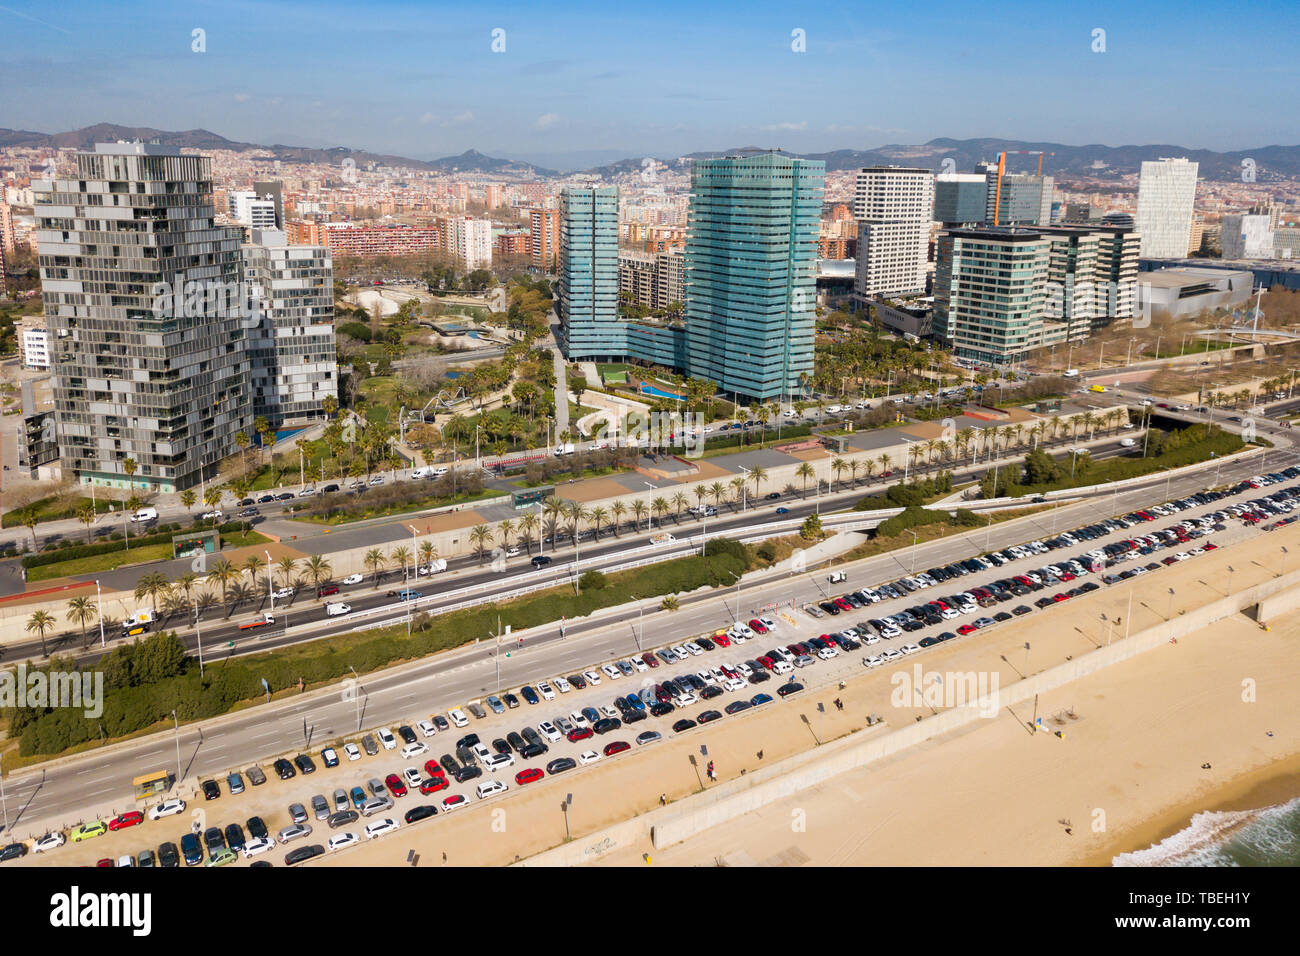 Antenna vista panoramica di Barcellona moderno quartiere di Diagonal Mar i el Front Maritim del Poblenou sulla costa mediterranea, Spagna Foto Stock